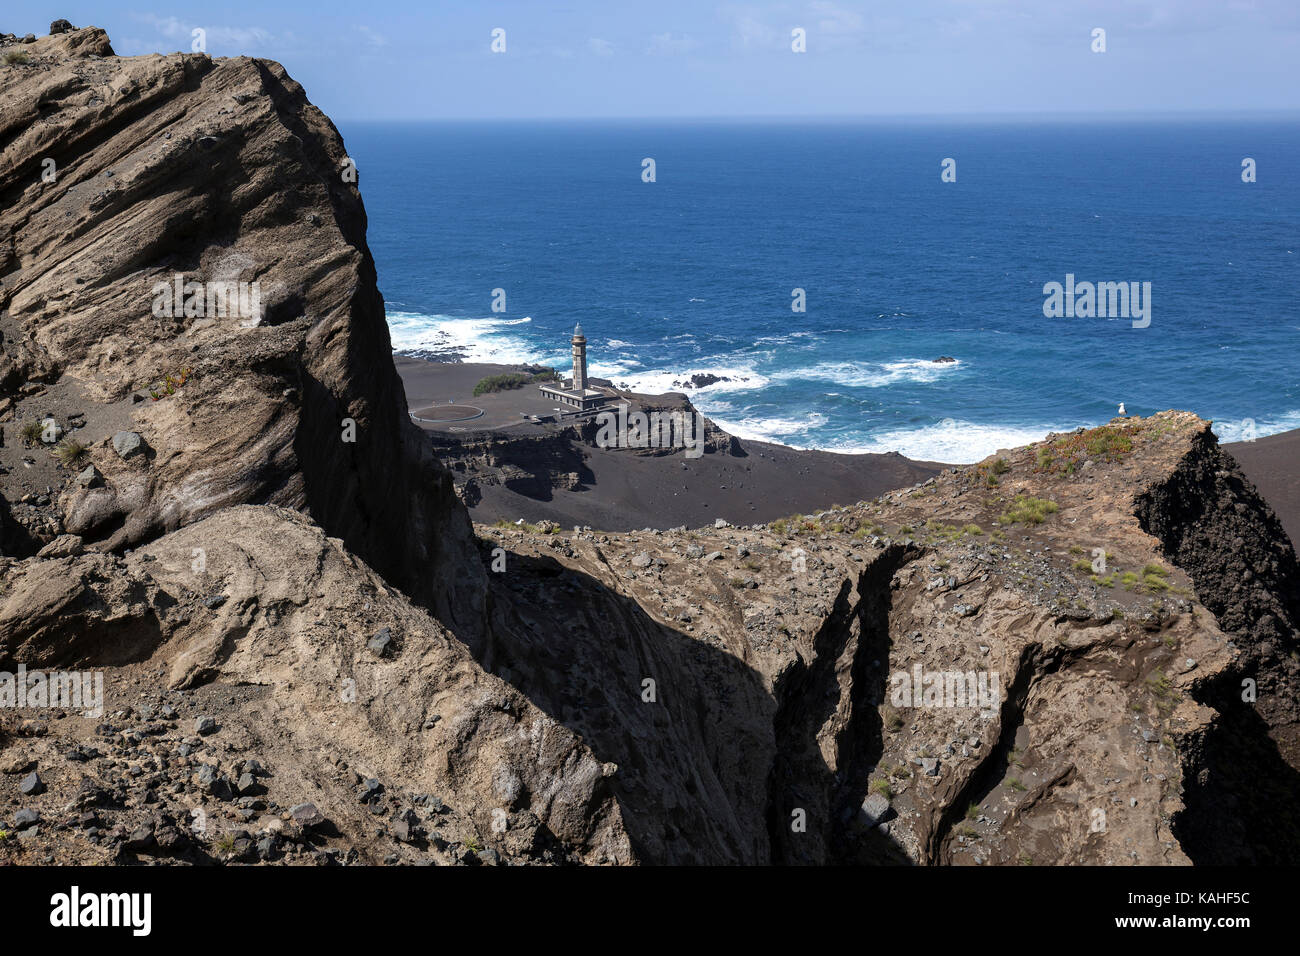 Paysage volcanique, désert de cendres du volcan capelinhos, à Ponta dos capelinhos, retour de l'ancien phare, capelo, île de Faial Banque D'Images